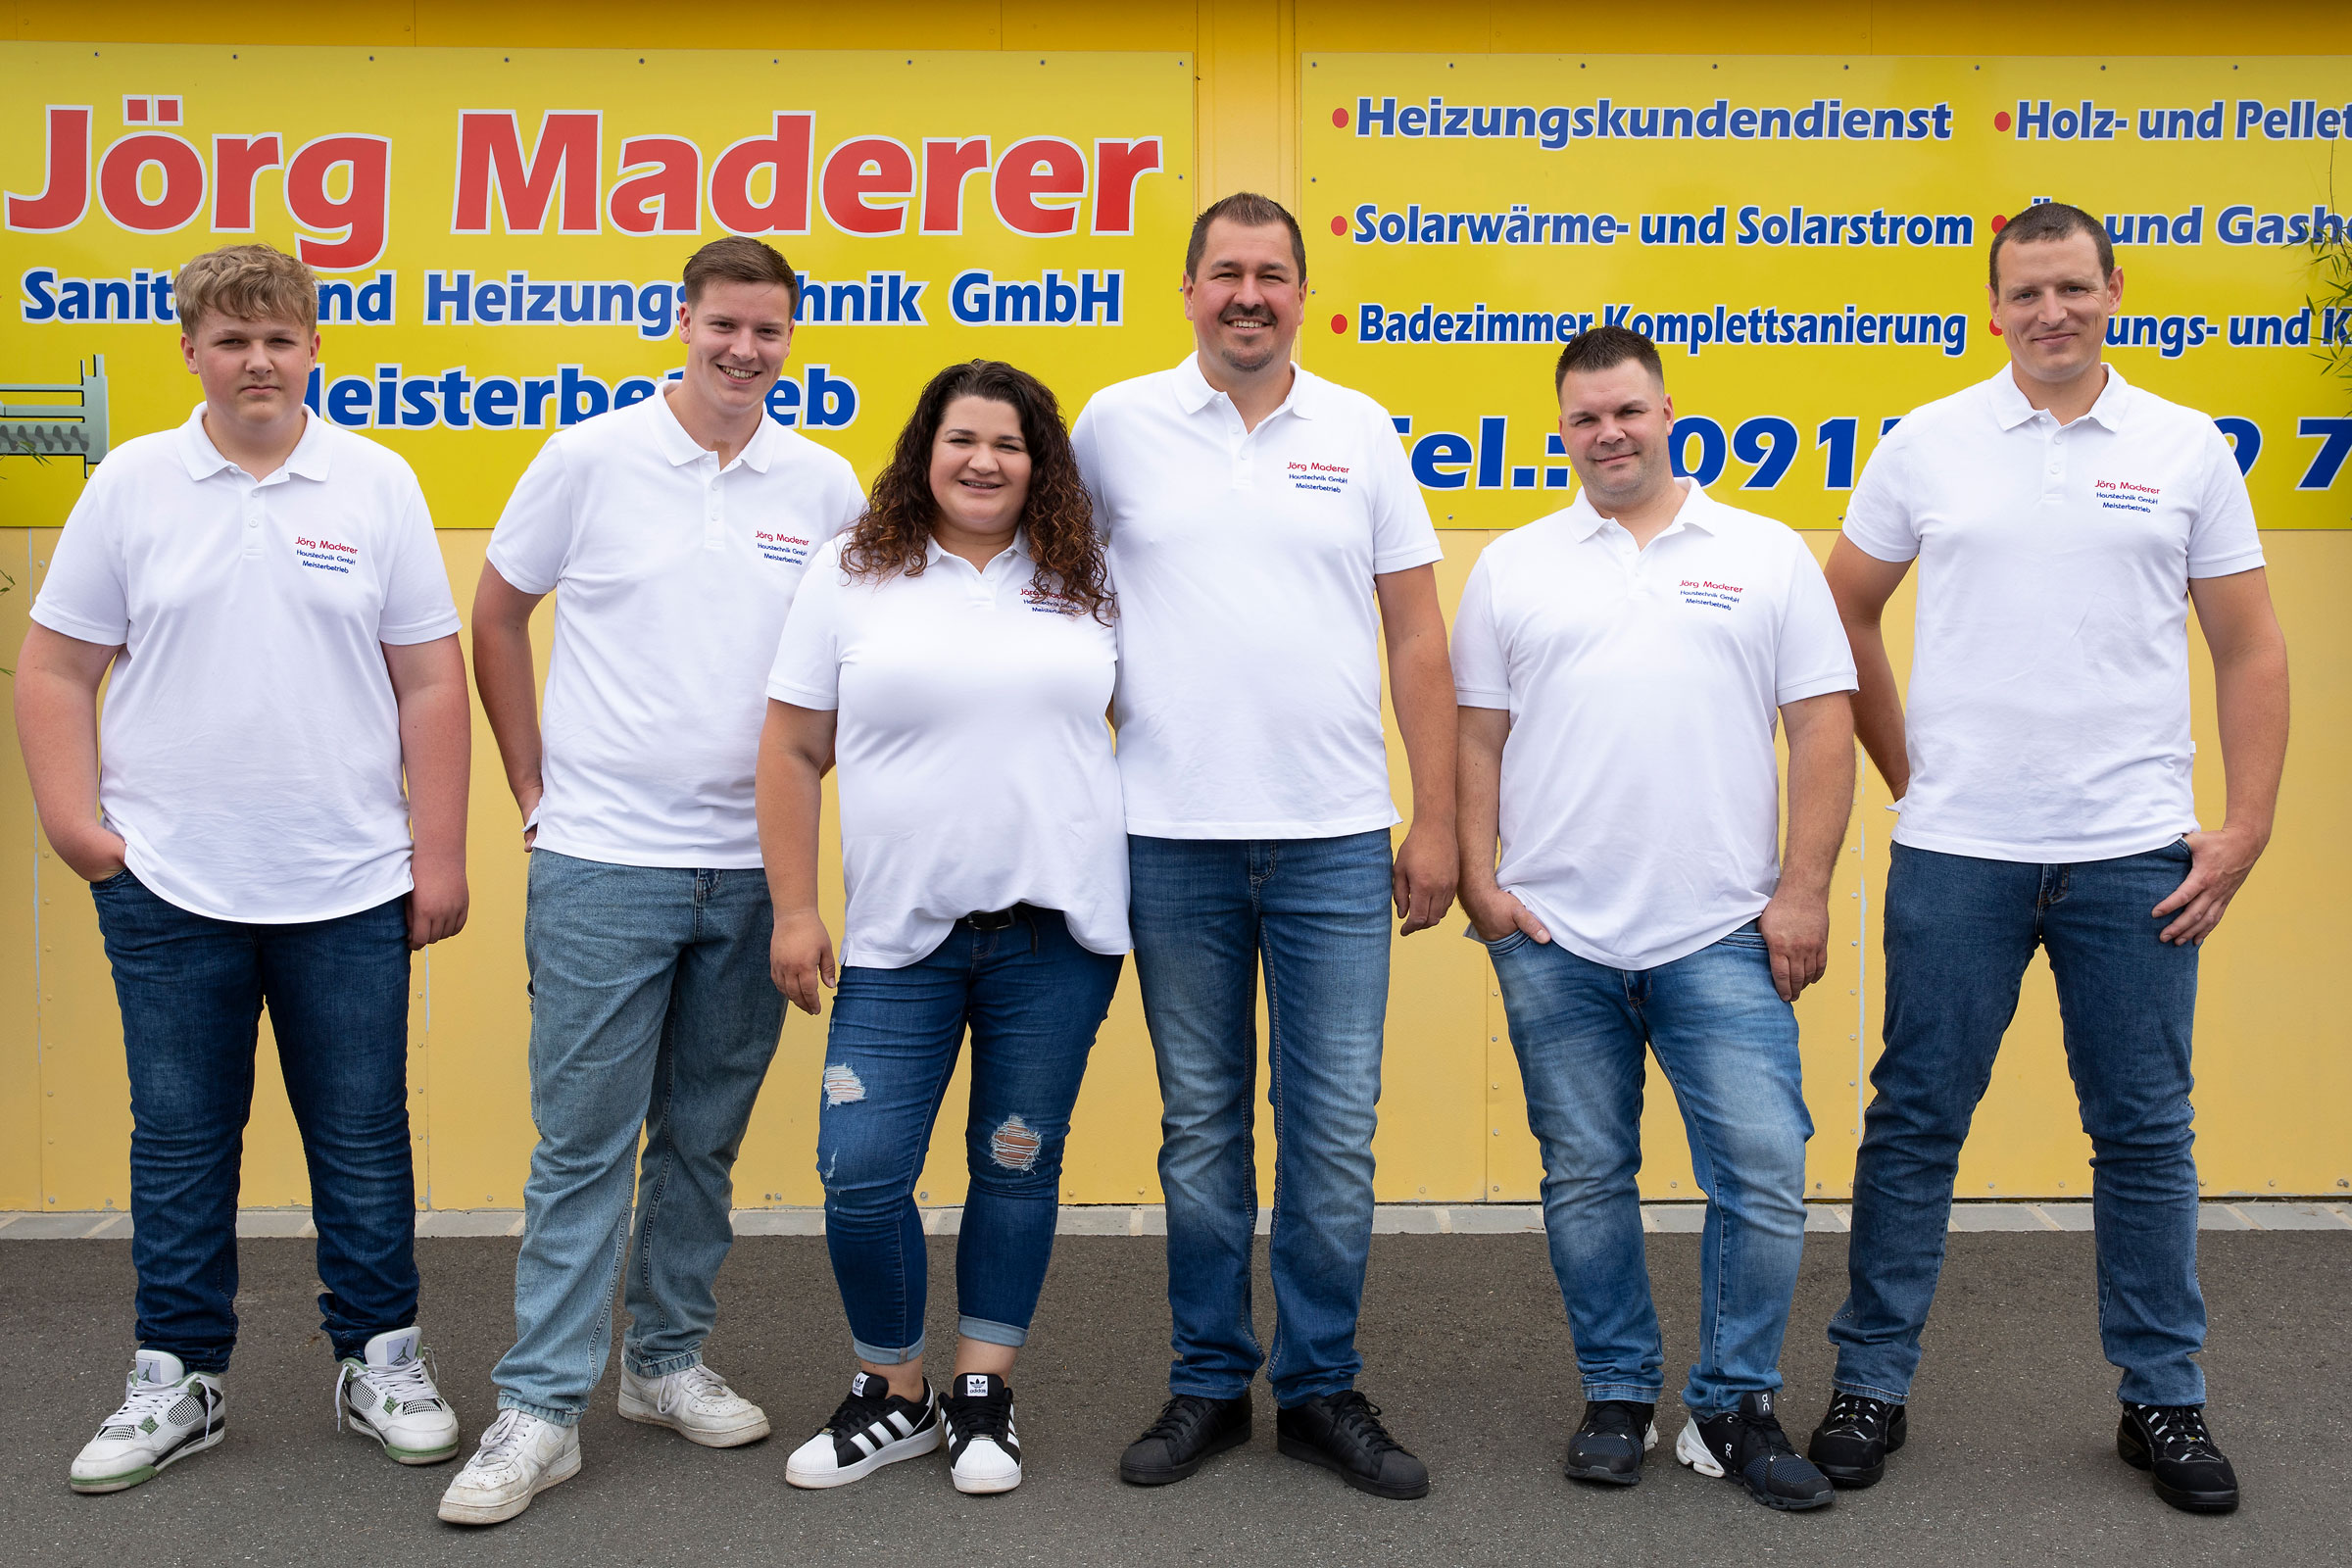 Team Maderer